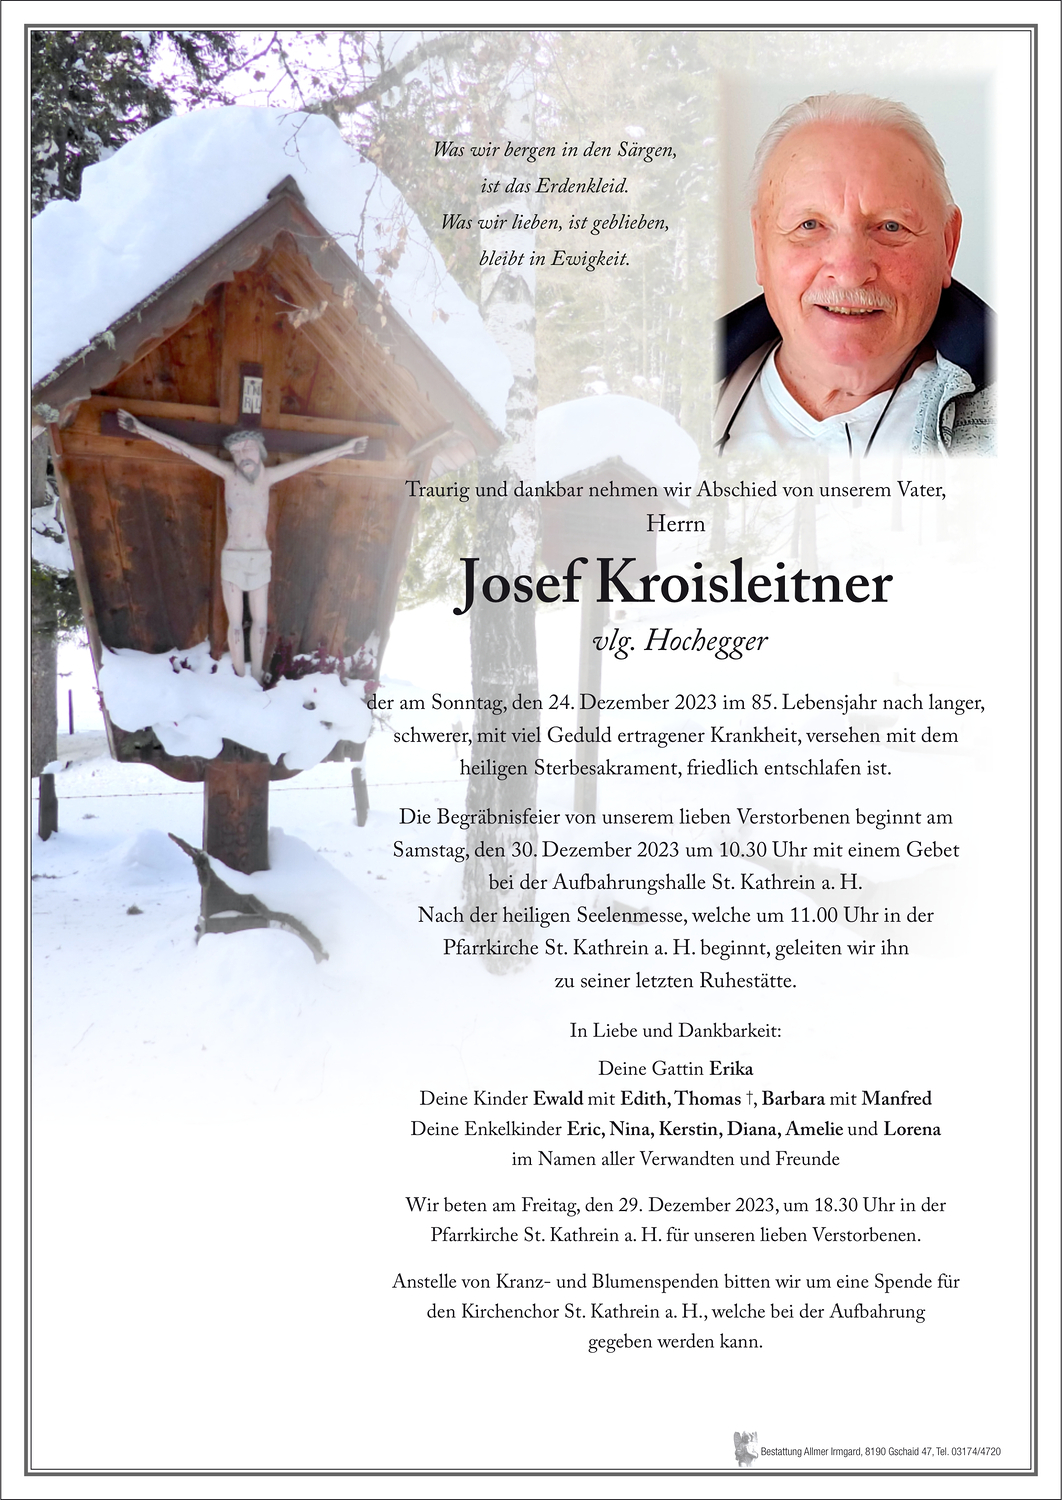 Josef_Kroisleitner-Josef-Kroisleitner.jpg